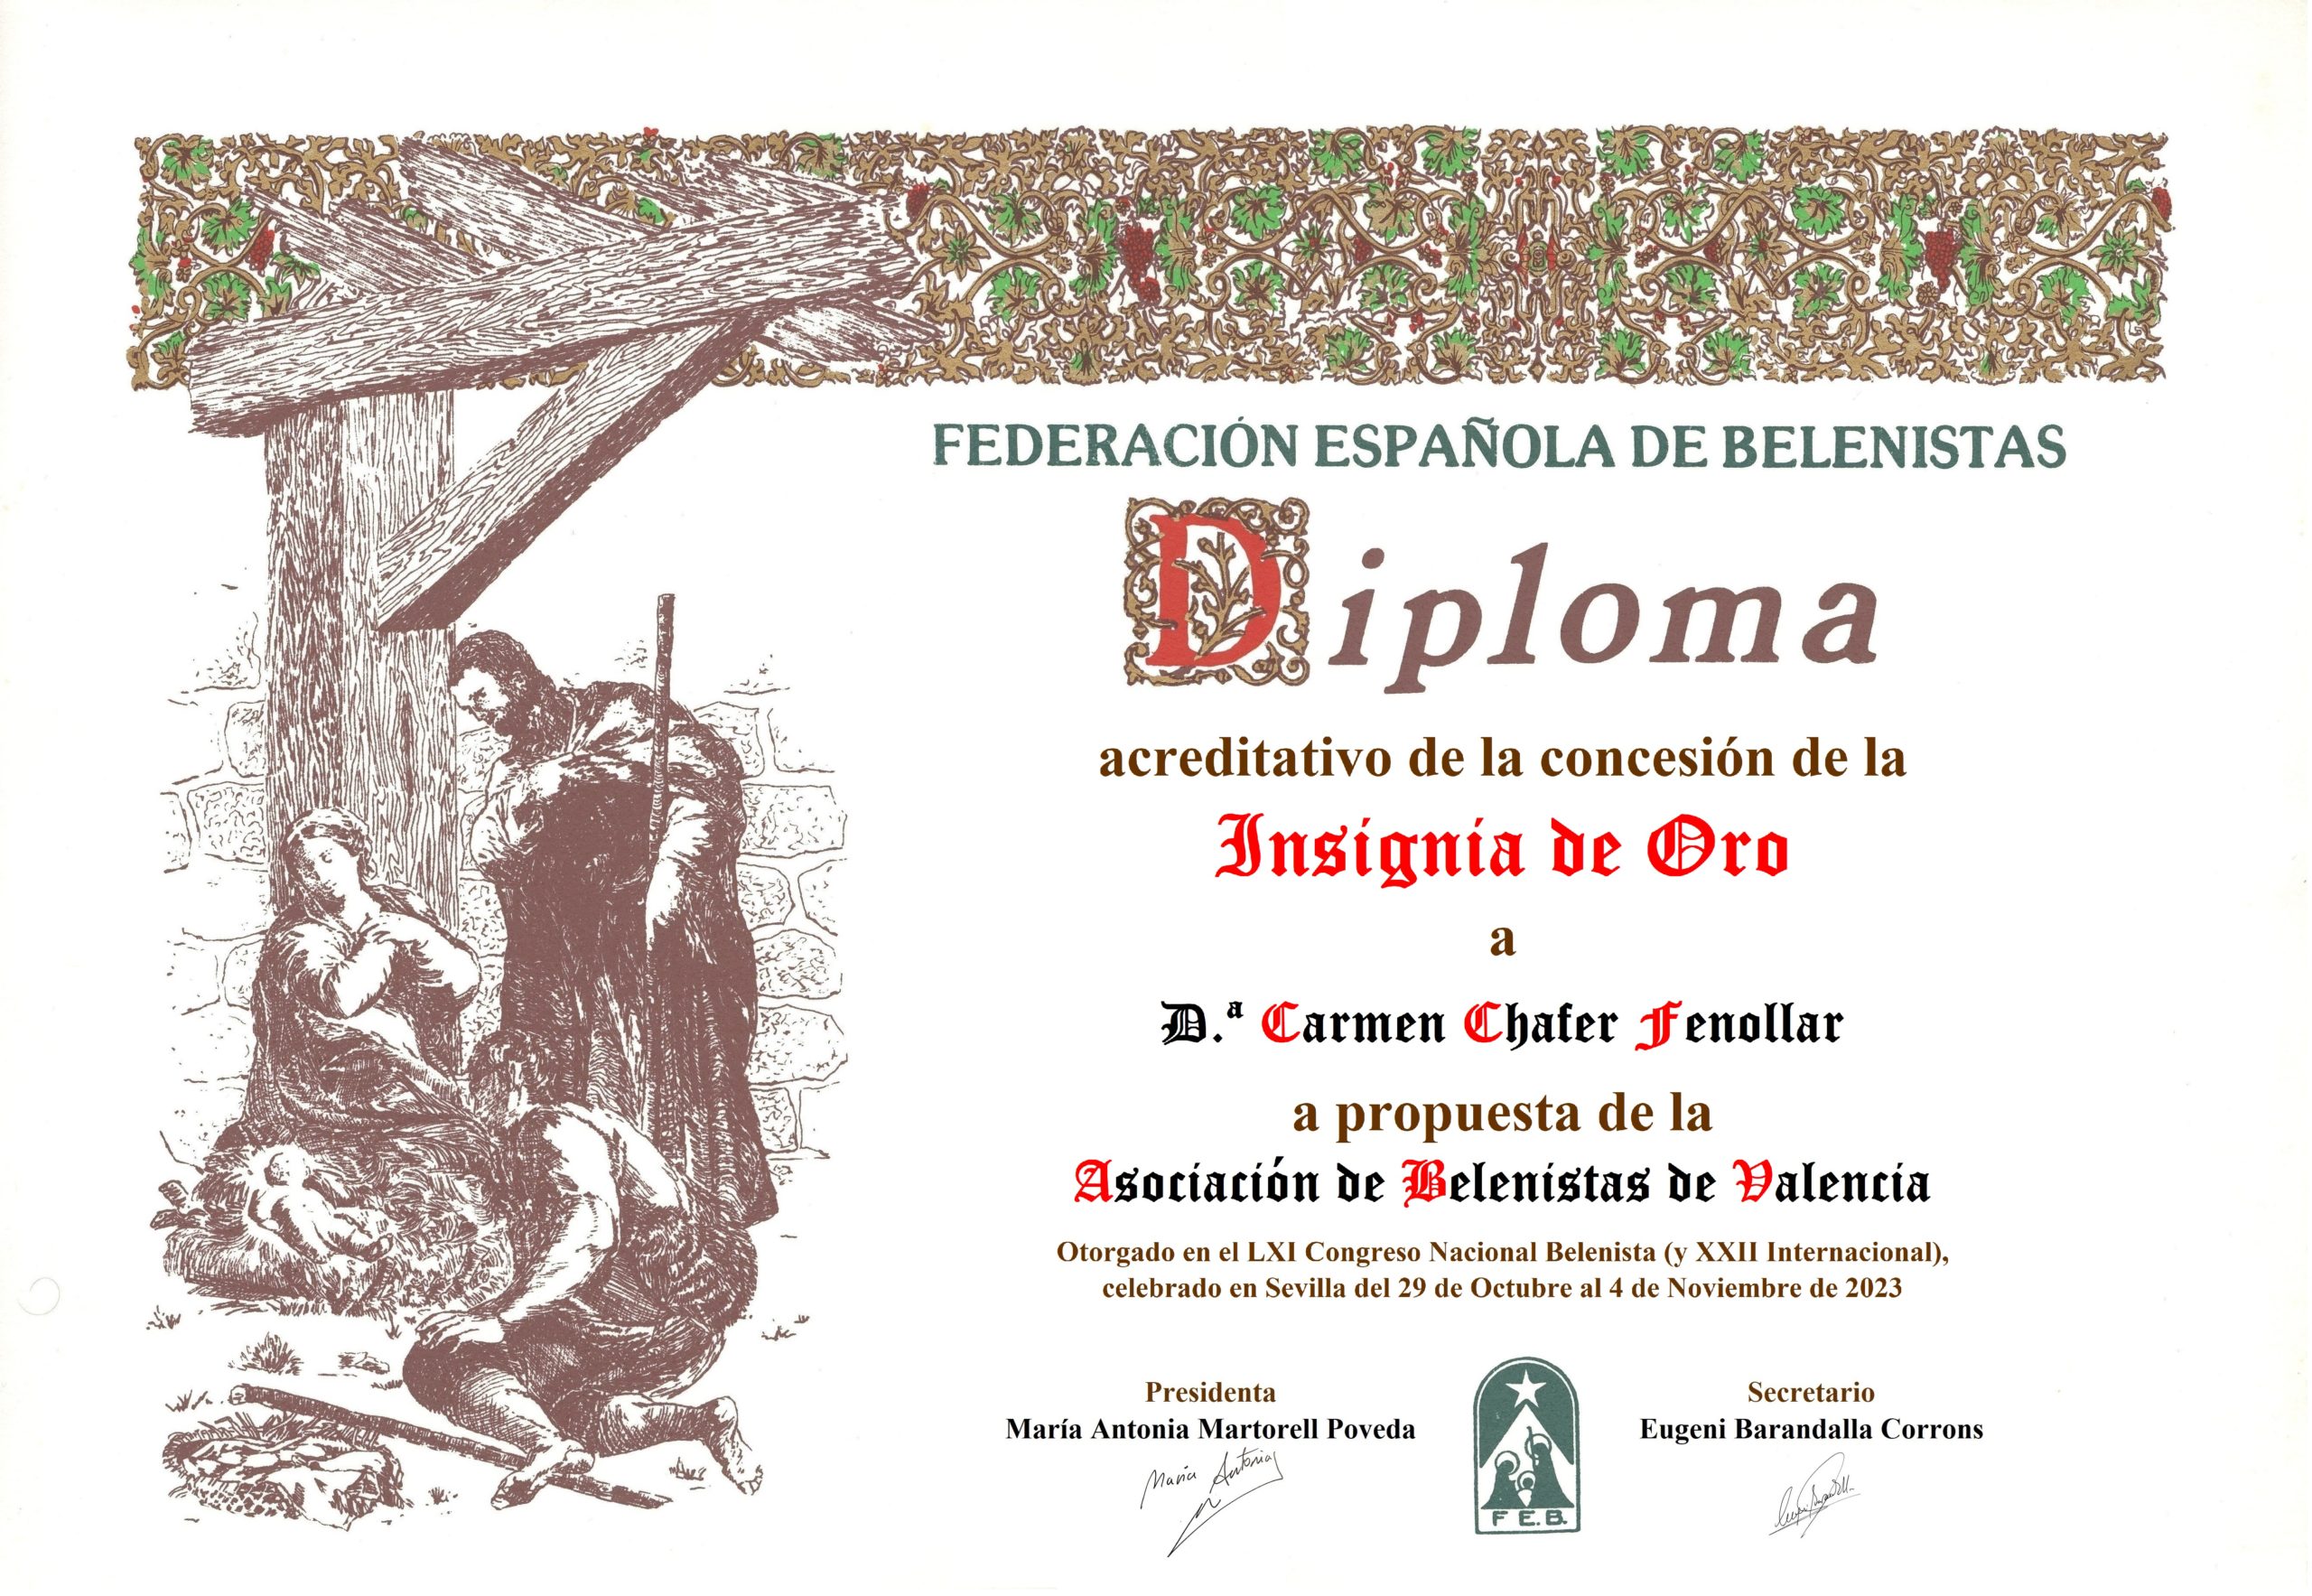 Carmen Chafer Fenollar - Título/Diploma Insignia de Oro FEB 2023